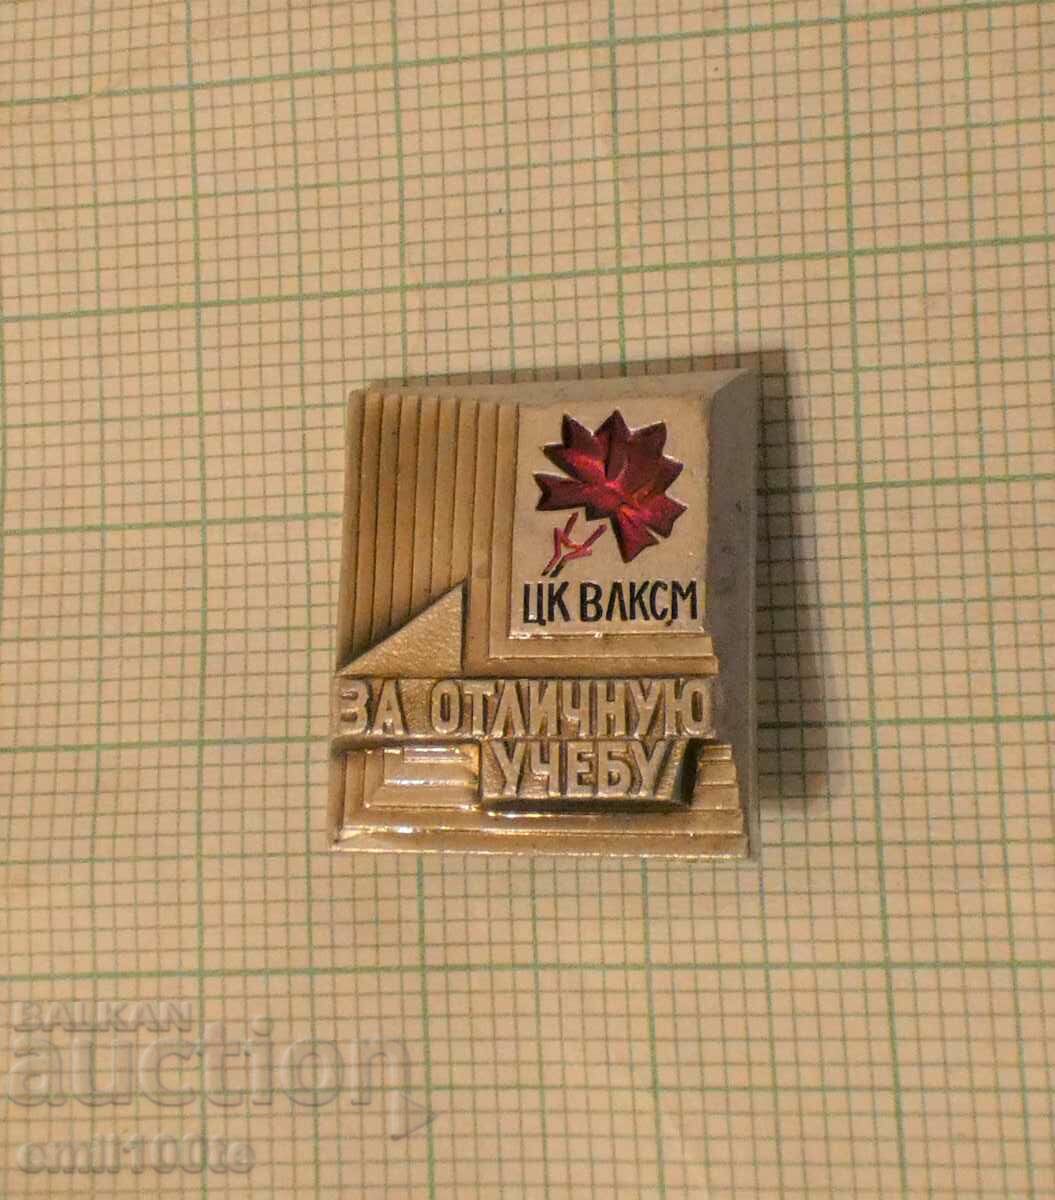 Σήμα - Για άριστη εκπαίδευση Κεντρική Επιτροπή του VLKSM Για άριστη εκπαίδευση της ΕΣΣΔ